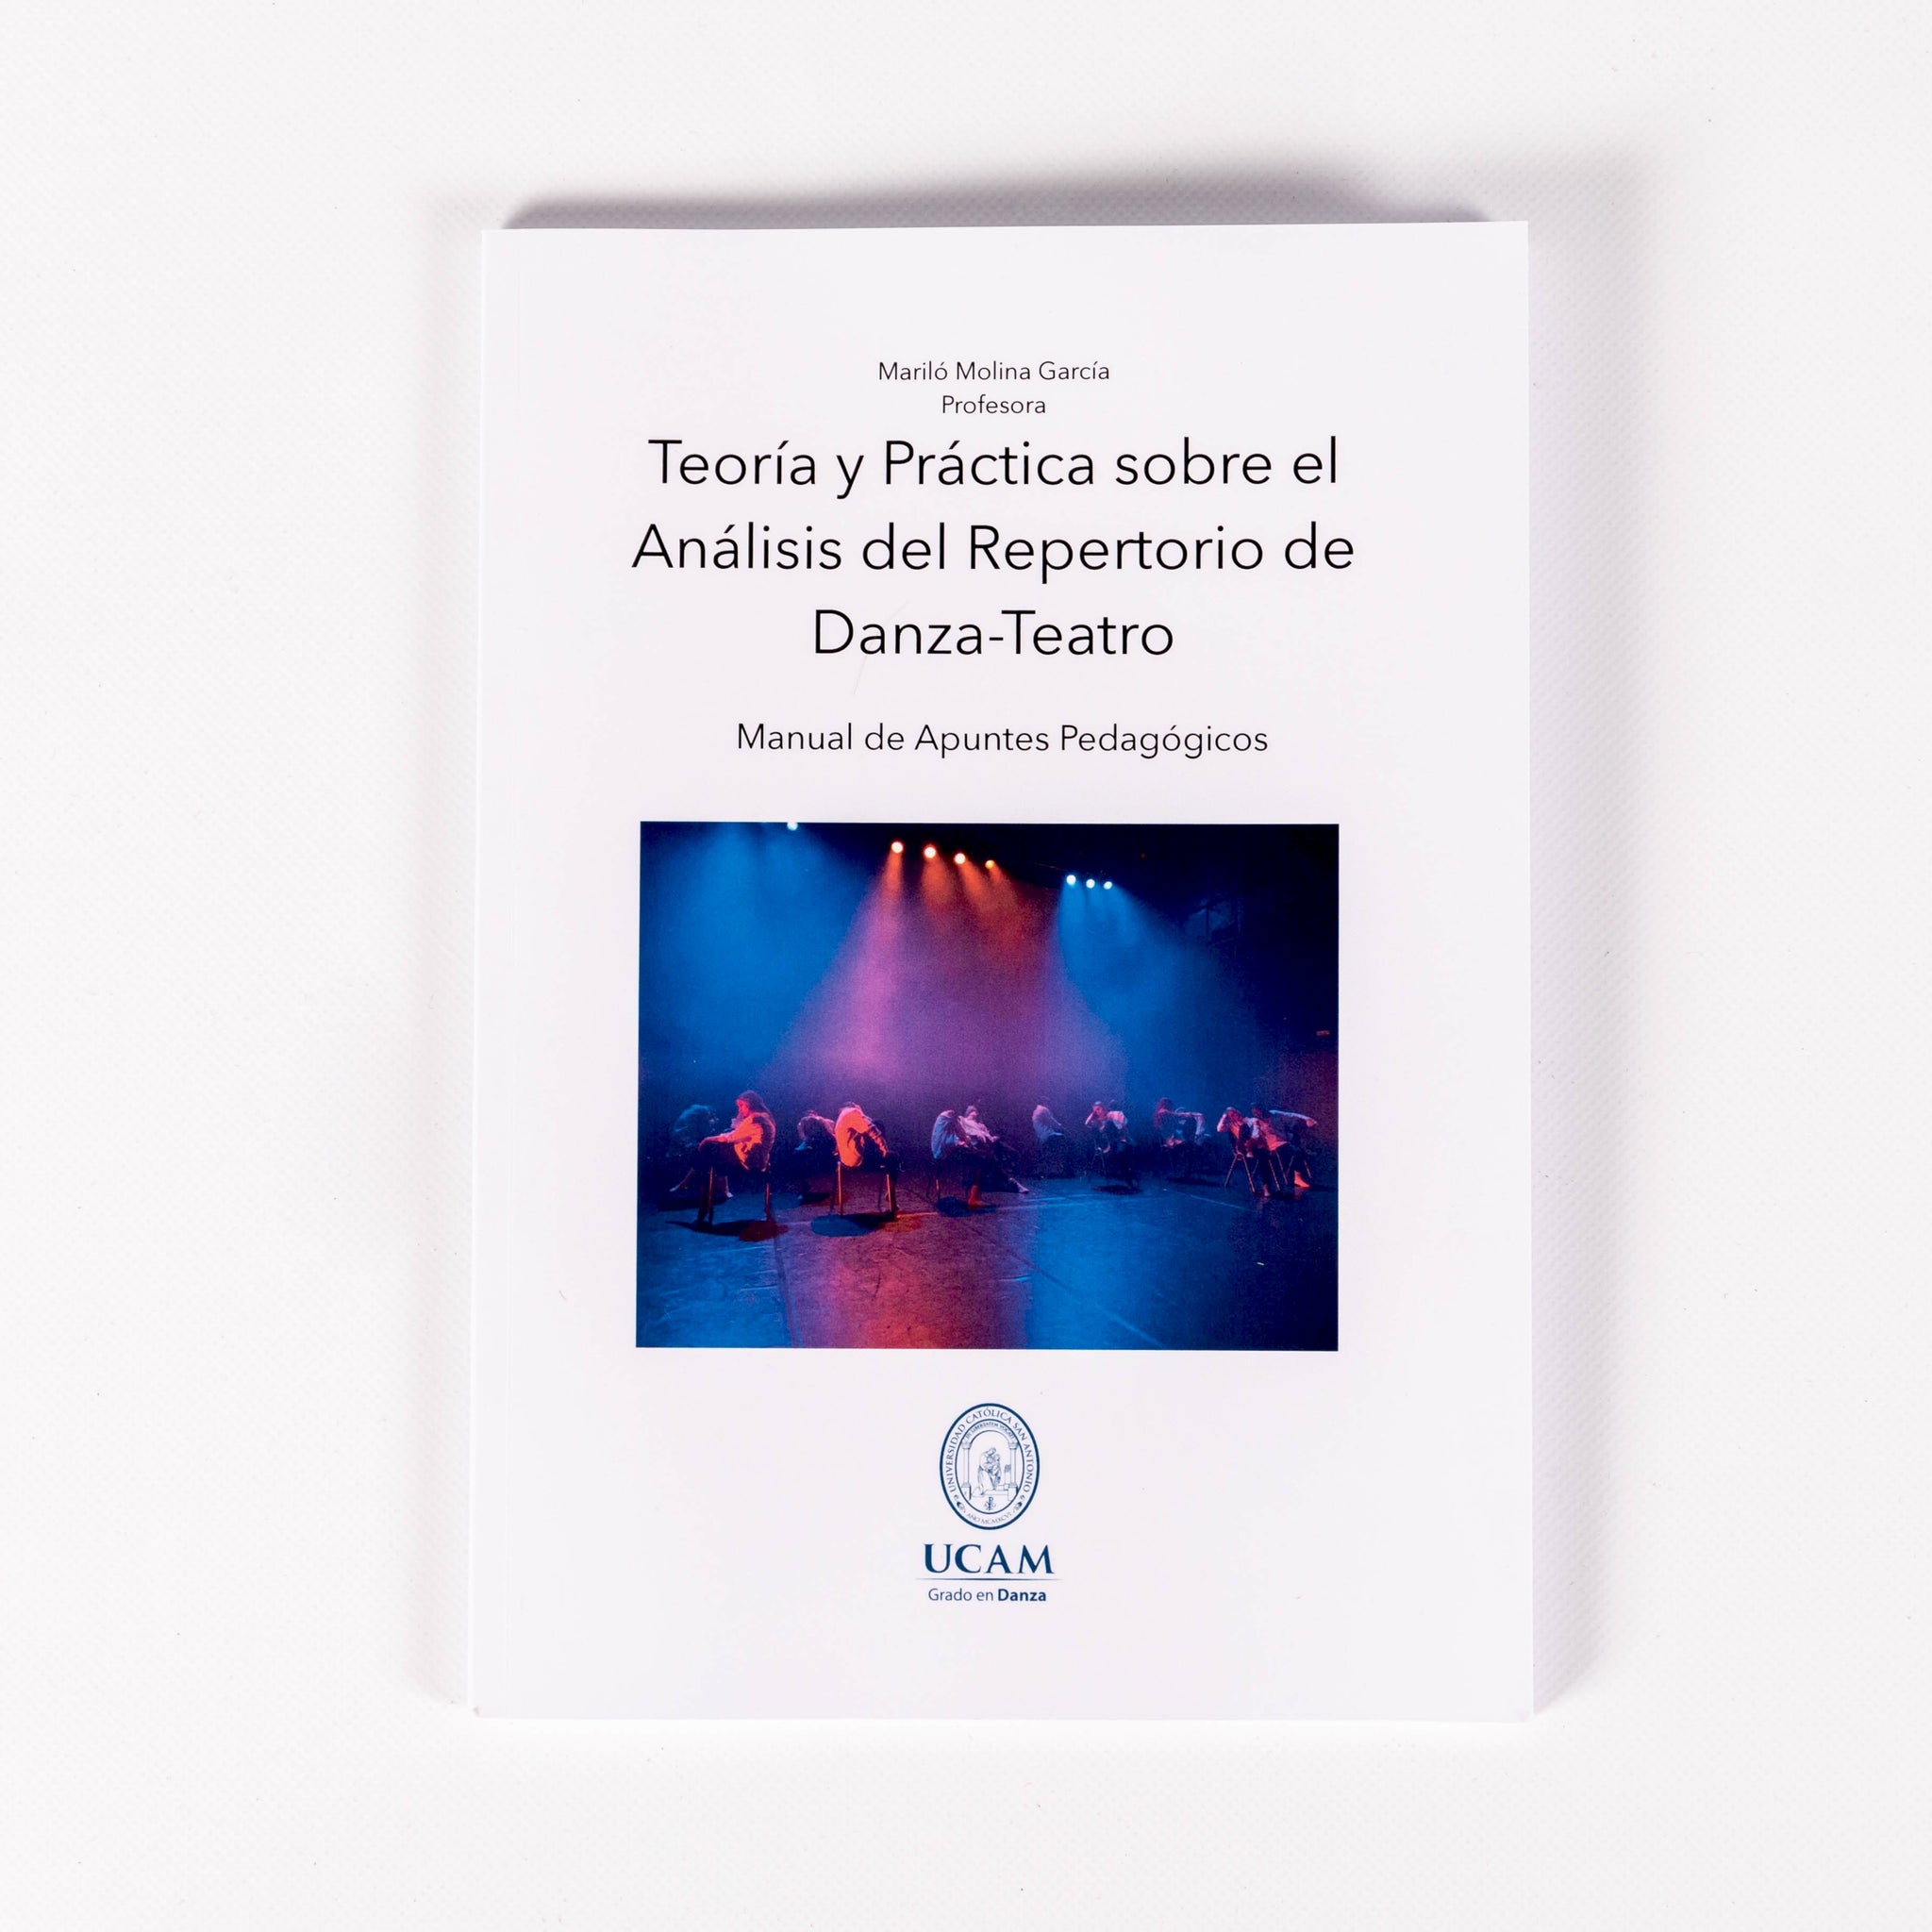 Teoría y práctica sobre el análisis del repertorio de Danza-Teatro